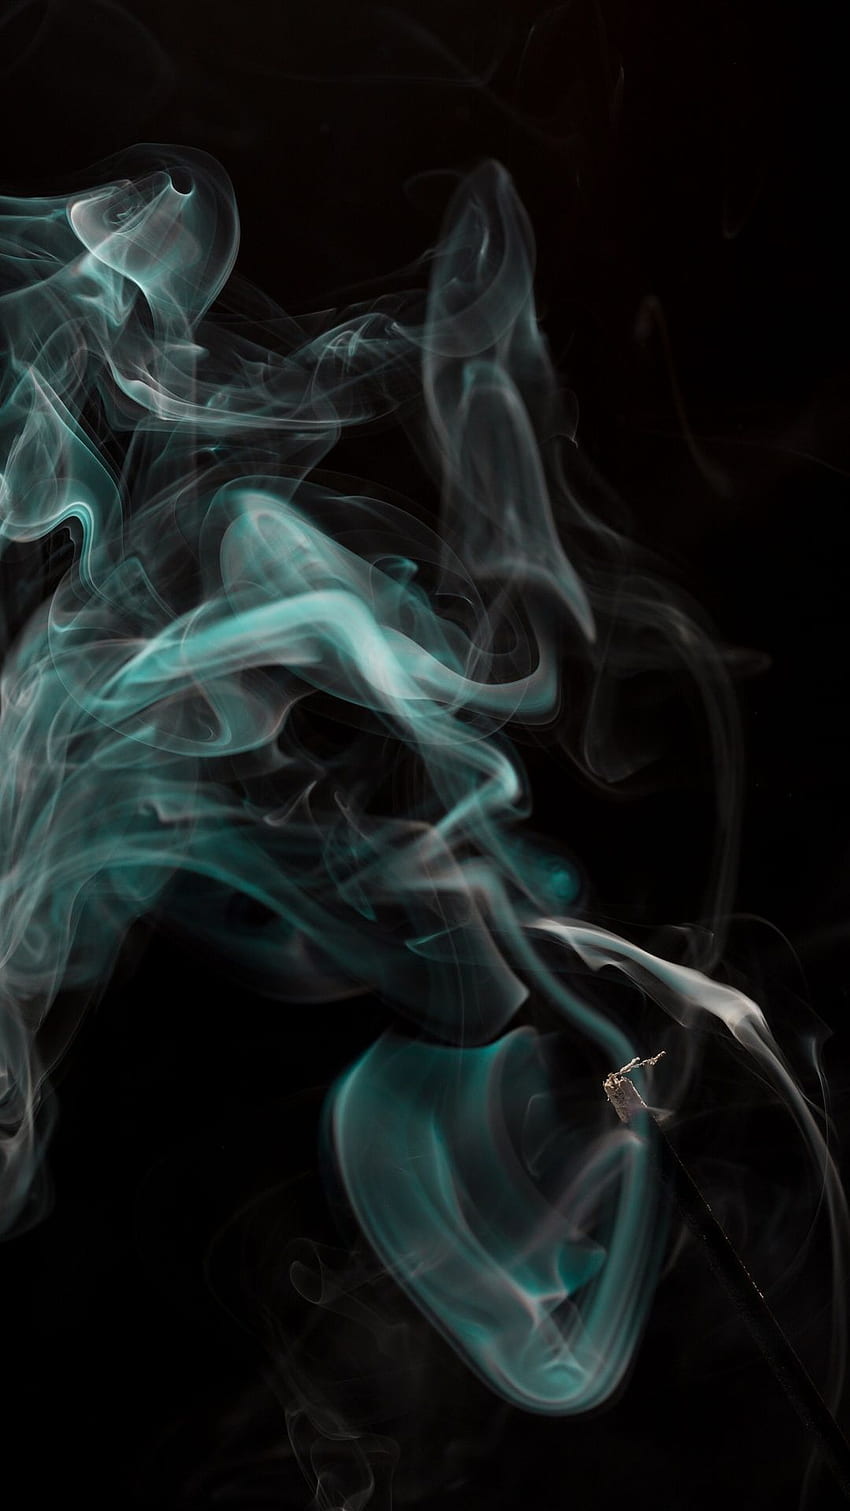 Abstract smoke: Bức ảnh liên quan đến khói mang đến cho bạn cảm giác uốn lượn và mộc mạc. Sự kết hợp giữa màu trắng và đen cùng những đường cong nghệ thuật tạo ra một bức ảnh trừu tượng đầy ấn tượng. Đừng bỏ qua cơ hội thưởng thức bức ảnh gây ấn tượng này.